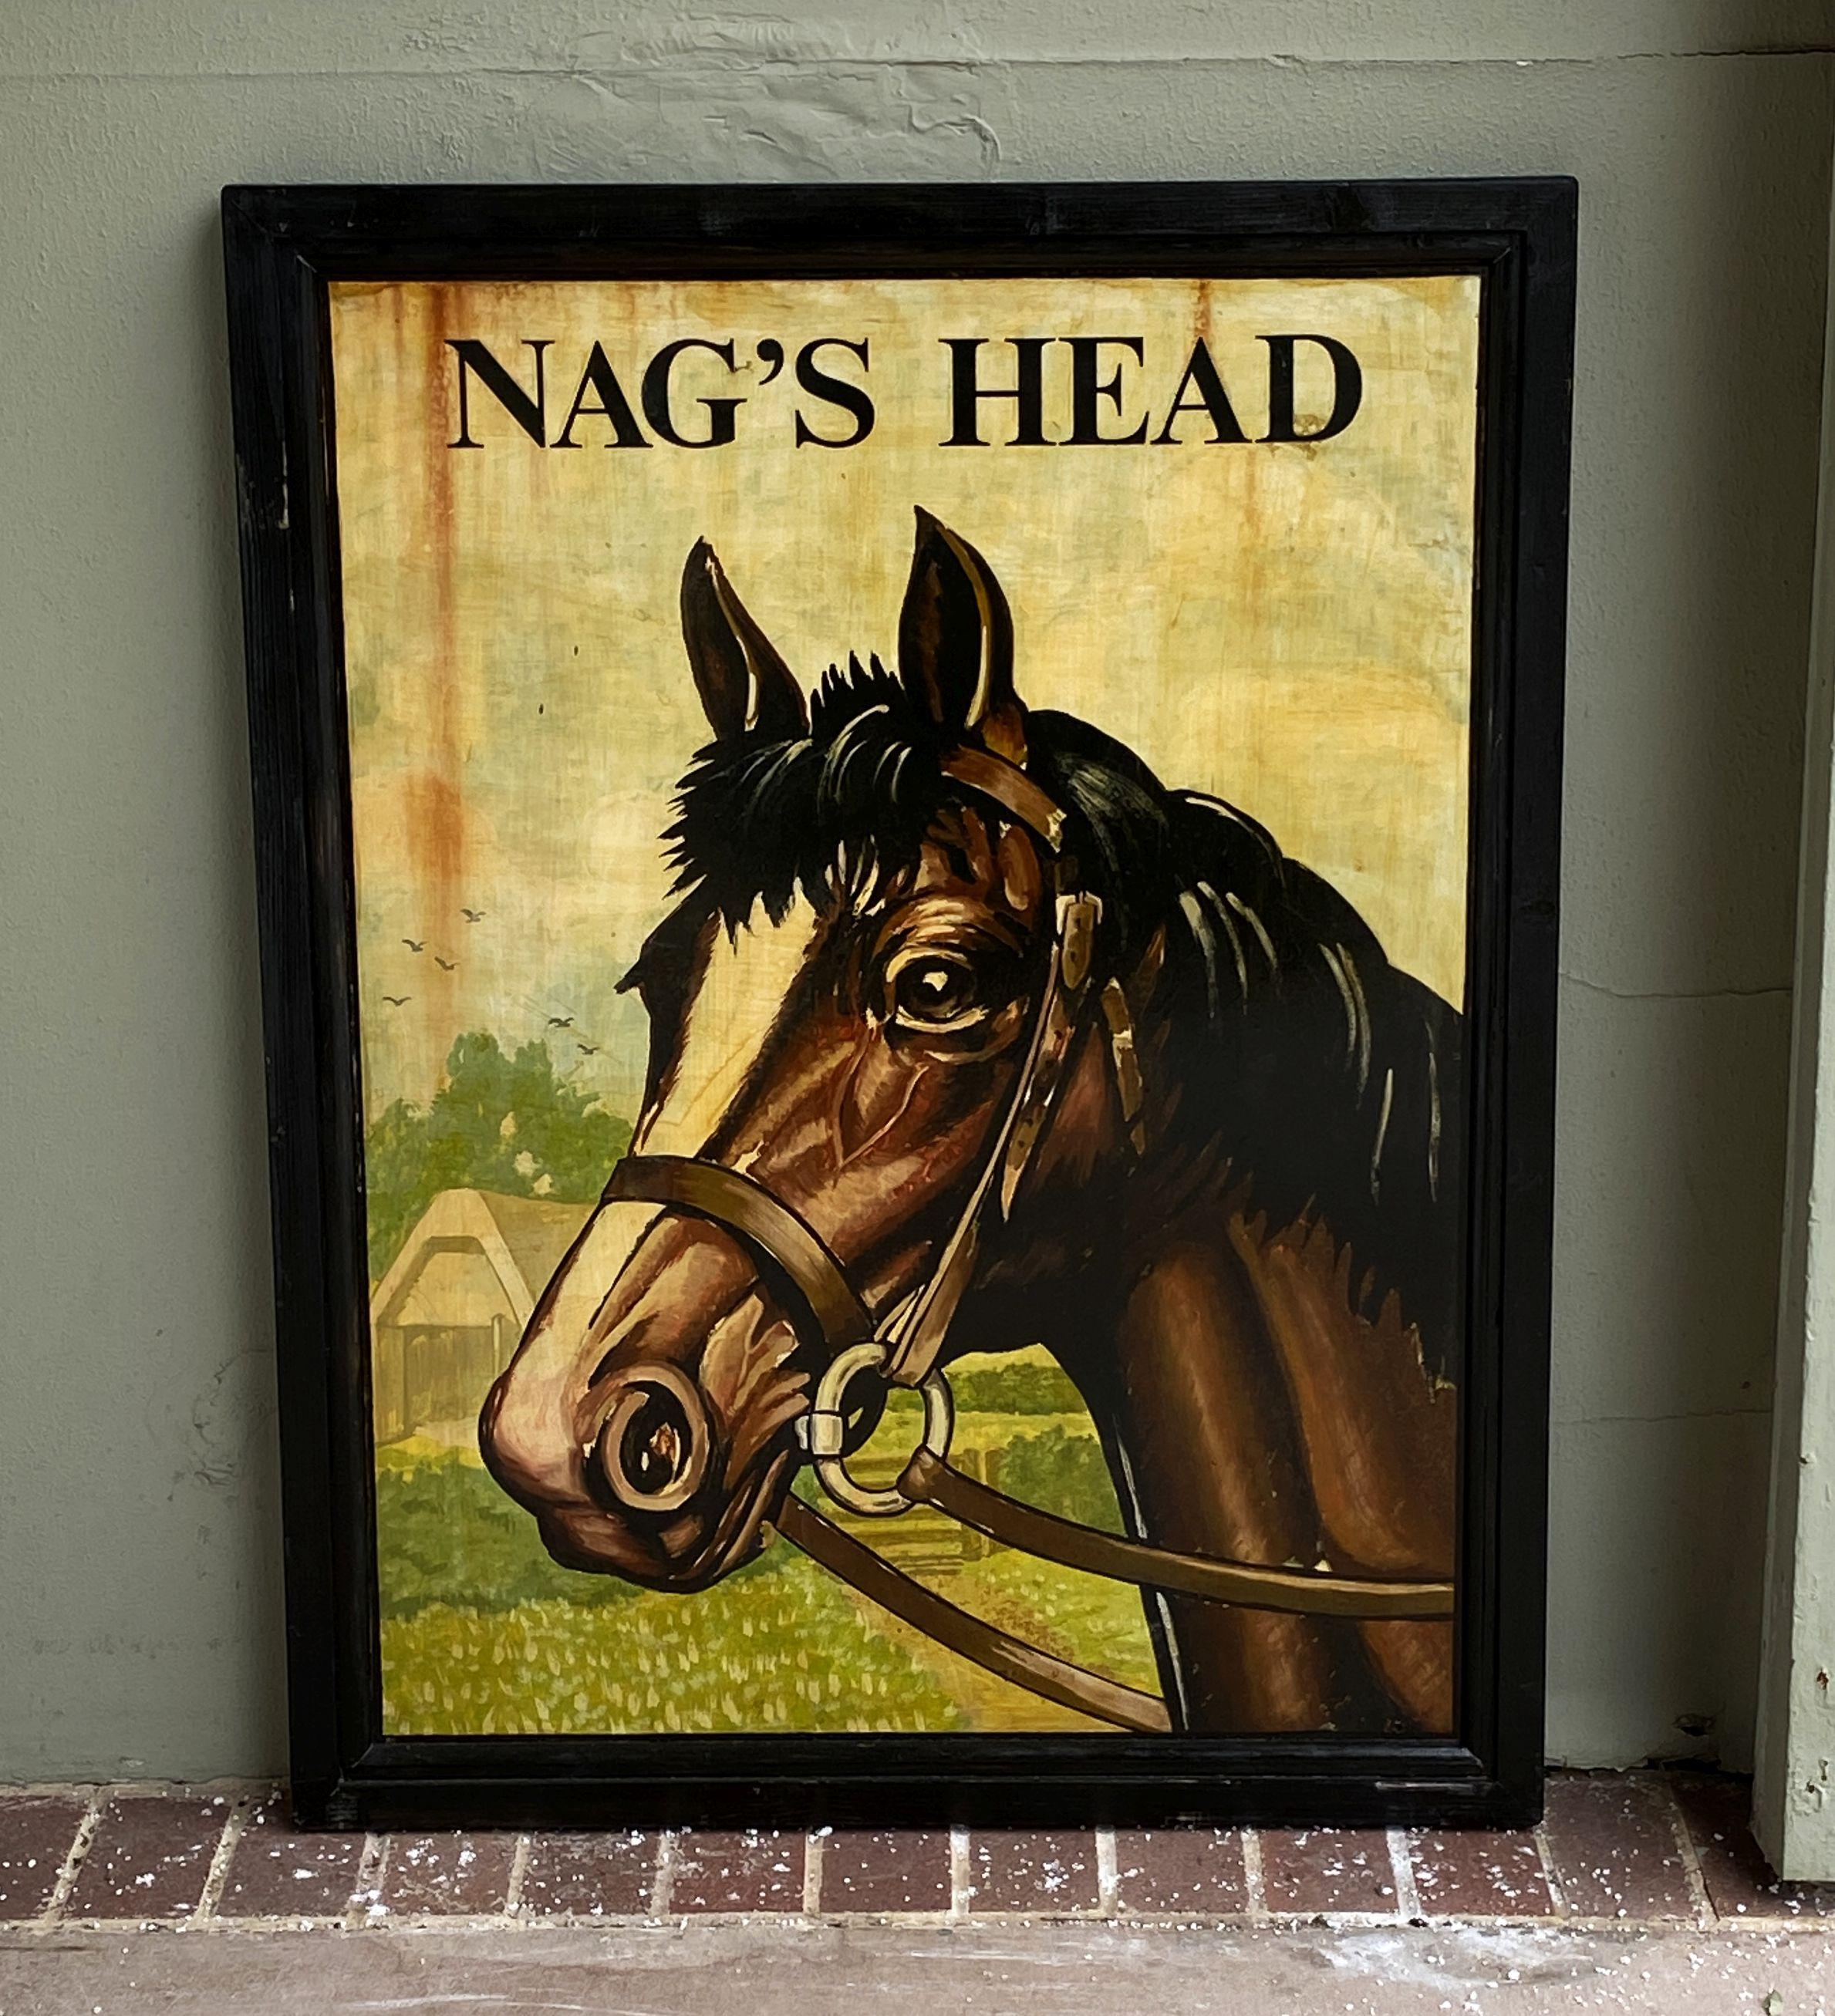 Ein authentisches englisches Pub-Schild (zweiseitig) mit dem Bild eines Pferdekopfes im Zaumzeug mit dem Titel: Nag's Head.

Ein sehr schönes Beispiel für eine alte Werbegrafik, bereit für die Ausstellung.

